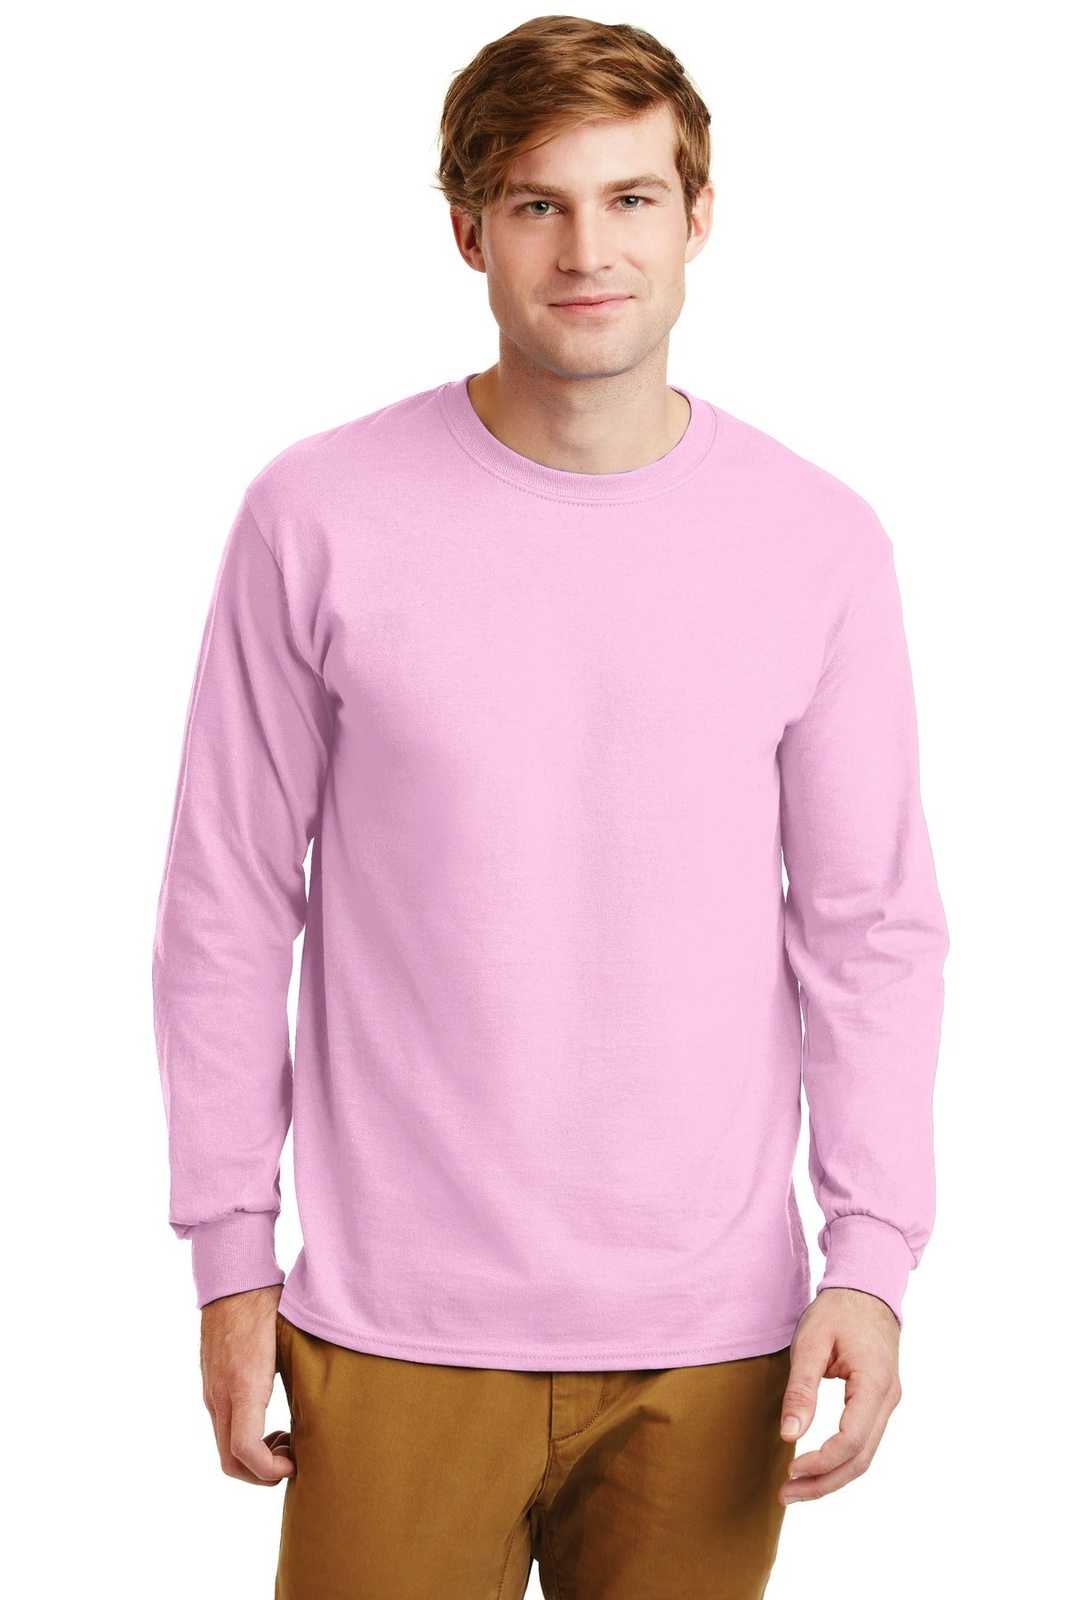 Gildan G2400 Ultra Cotton 100% Cotton Long Sleeve T-Shirt - Light Pink - HIT a Double